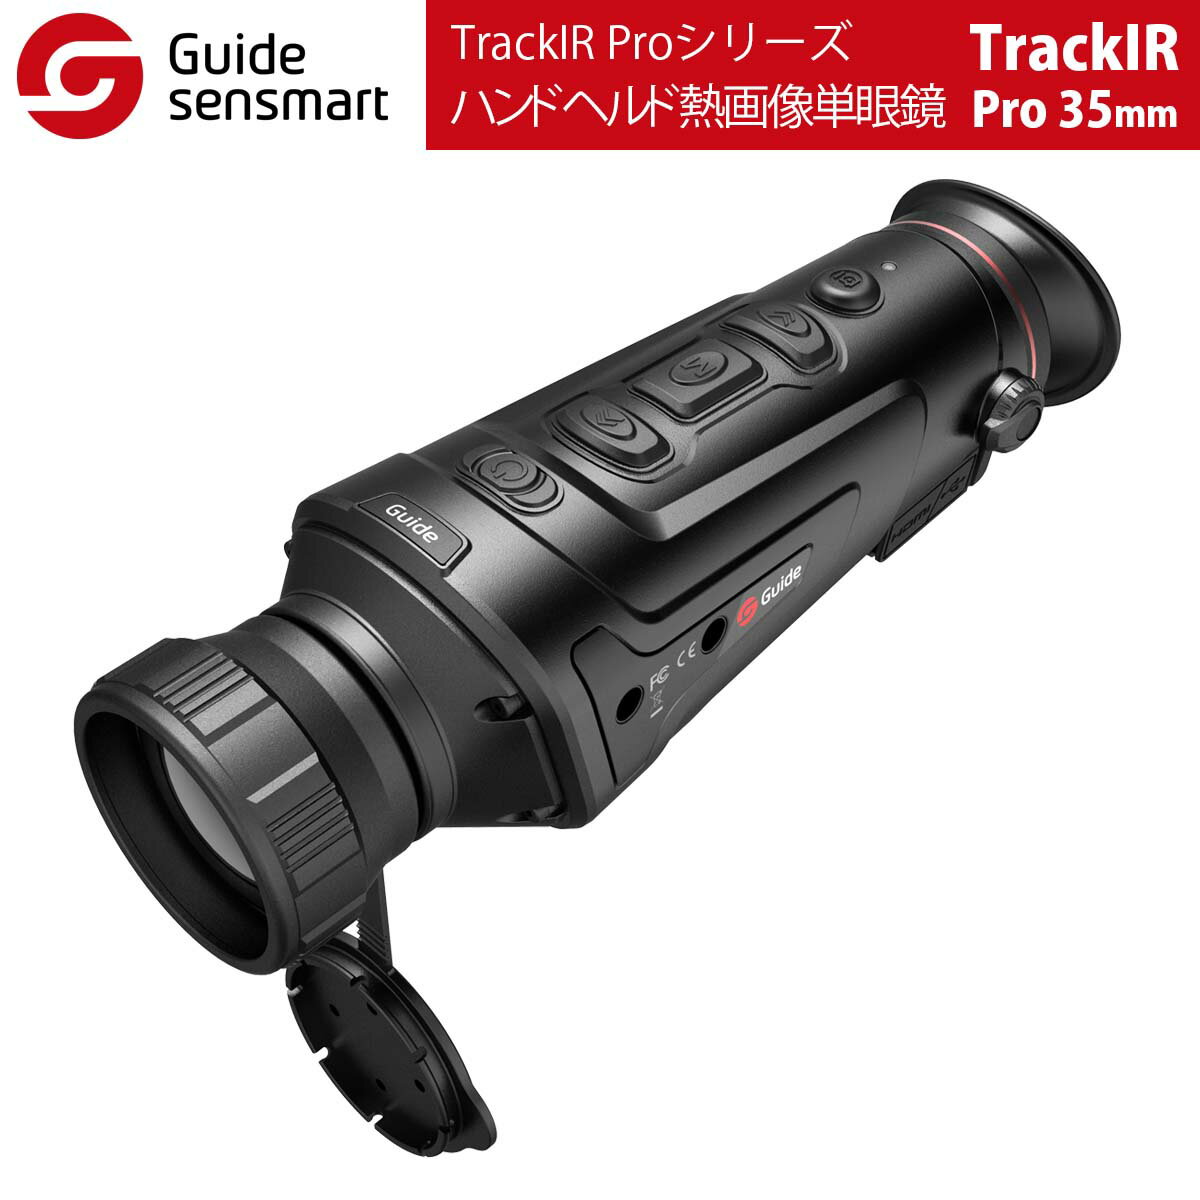 TrackIRシリーズ、TrackIR Proシリーズは、プロのハンター向けに設計されたGuideの新しく発売されたハンドヘルド熱画像単眼鏡で、3つのオプションレンズ（IR：25 mm / 35 mm / 50 mm、IRPro：19 mm / 25 mm / 35 mm、）があります。 400 x 300IRセンサー（IRPro：640 x 480IRセンサー）と1280x 960 HDディスプレイを備え、あらゆる条件で適応性のある優れた熱画像を提供します。スムーズズーム、内蔵のスタディアメトリックレンジファインダー、画質調整、ピクチャーインピクチャー機能をサポートします。 TrackIRは、50 Hzの高フレームレートで、距離の動的で高速な動き全体にわたって鮮明な熱画像をキャプチャします。また、アクセサリの接続をサポートして、より多くの機能を実現します。 【特徴】 ■見やすい1280×960HDディスプレイ ■高解像度センサーにより、より鮮明な画像が保証 ■スムーズズーム対応（1倍〜4倍） ■スタディアメトリックレンジファインダーを内蔵 ■クイックメニューは操作が簡単でユーザーフレンドリーなUI ■多様な環境で見やすい複数のカラーパレット ■IP66、1メートルの落下試験 ■距離計、照明、モバイル電源などの外部アクセサリを接続 【利用シーン】 ■ナイトハンティング ■サーチ＆レスキュー ■警備、監視 ■夜間パトロール ■アウトドアスポーツ ■パーソナルセキュリティ モデル TrackIRシリーズ TrackIRProシリーズ TrackIR-25mm TrackIR-35mm TrackIR-50mm TrackIRPro-19mm TrackIRPro-25mm TrackIRPro-35mm（この商品） 検出器 検出器タイプ 400×300 @ 17um VOx 640×480 @ 12um VOx スペクトル 8um〜14um 8um〜14um NETD &le;50mk レンズ 焦点距離 25mm / F1.1 35mm / F1.2 50mm / F1.2 19mm F1.0 25mm F1.0 35mm F1.0 フォーカシング マニュアルフォーカス FOV 15.4&deg;×11.6&deg; 11.1&deg;×8.3&deg; 7.8&deg;×5.8&deg; 22.9×17.2 17.5×13.1 12.5×9.4 ディスプレイ スクリーン 1280×960、0.4インチカラーLCOSディスプレイ（1メートルで22インチの画面を見ているように感じます） 接眼レンズ 単眼、射出瞳&ge;10mm、調整可能な視度-4〜 +2 倍率 1.7〜6.8 2.3〜9.2 3.3〜13.2 1.1〜8.8X 1.5〜12X 2.0〜16X イメージング フレームレート 50Hz デジタルズーム 1X〜4X（スムーズズーム） 1X〜8X（スムーズズーム） カラーパレット ホワイトホット、ブラックホット、アイアンレッド、ブルーホット、レッドホット（TrackIR PRO：調整可能なレッドホット） シーンモード 強化、ハイライト、ナチュラル ピクチャーインピクチャー ピクチャーインピクチャー拡大画像は左上、右上、右上に表示されます 機能 写真 あり あり あり あり あり あり ビデオ あり あり あり あり あり あり ホットスポット追跡 あり あり あり あり あり あり スタディアメトリックレンジファインダー あり あり あり あり あり あり Wi-Fi / APP Wi-Fiは写真とビデオを共有し、アプリIOSとAndroidでも制御できます 補償モード 自動補正/シャッター補正/シーン補正 表示ボックス 赤、/黄/緑、表示ボックスの座標は調整可能 他の 画像の強調、画像の明るさとコントラストは調整可能、自動電源オフ、自動スリープ、超省電力モード、作業インジケーターをオフにすることができます 電源 電池のタイプ 内蔵リチウムイオン電池（2x18650、6000mAh） 動作時間 &ge;5h &ge;4.5h 重量と寸法 重さ 470g 485g 535g 490g 490g 560g 寸法 192×65×71 214×65×71 192×65×71 214×65×71 パッケージの内容 標準 電源アダプター、USBケーブル、マイクロHDMIケーブル、レンズカバー、リストストラップ、ショルダーストラップ、ライニングパッケージ、クイックスタートガイド オプション（別売） 外部ピカティニーレール、外部スクリーンなど... インターフェース USB 充電、データ送信用のタイプC ビデオ出力 マイクロHDMI 外部接続 ピカティニーレールによる外部接続 メモリカード 16ギガバイト 環境特性 作動温度 -10C&deg;〜50C&deg; 保管温度 -30C&deg;〜60C&deg; 耐衝撃・防水 IP66、1メートル落下試験 証明書 UN38.3、RoHS、CE、FCC、EAC 検出範囲 人間：1.8m×0.5m 700m 1000m 1400m 800m 1000m 1400m 車両：2.3m×2.3m 1700m 2400m 3000m 1850m 2400m 2800m 認識範囲 人間：1.8m×0.5m 350m 500m 700m 400m 500m 700m 車両：2.3m×2.3m 700m 1000m 1400m 800m 1000m 1400m 1年無償保証永久修理保証初期不良の即交換対応万が一の故障でもご安心ください。Guide sensmart【メーカー正規品】 ハンドヘルド熱画像単眼鏡 TrackIRPro-35mm（TrackIRシリーズ）自動電源オフ 光漏れ防止 超無音ボタン ノイズレスシャッターキャリブレーション